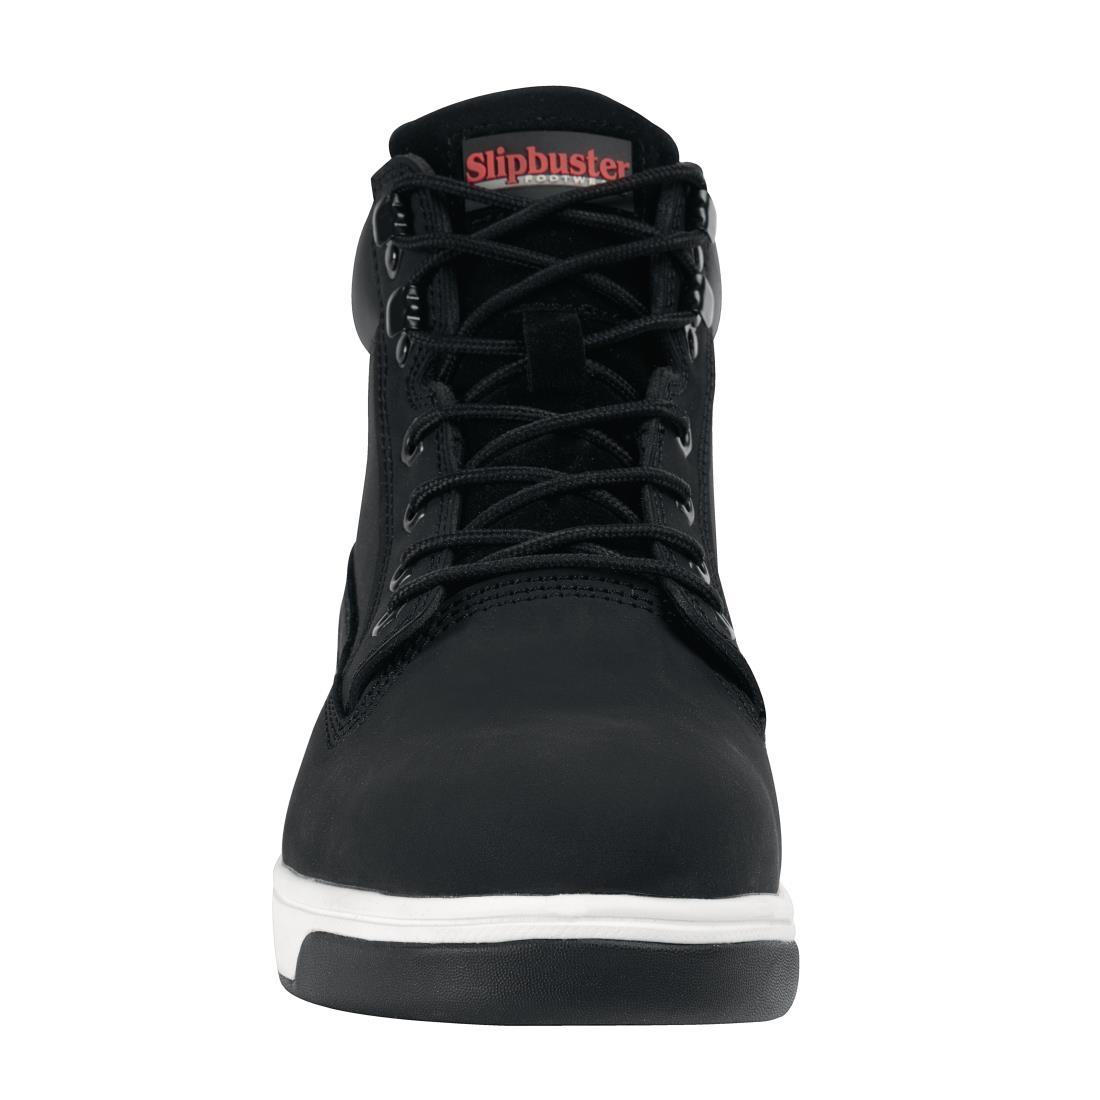 Slipbuster Sneaker Boots Black 41 - BB422-41  - 3